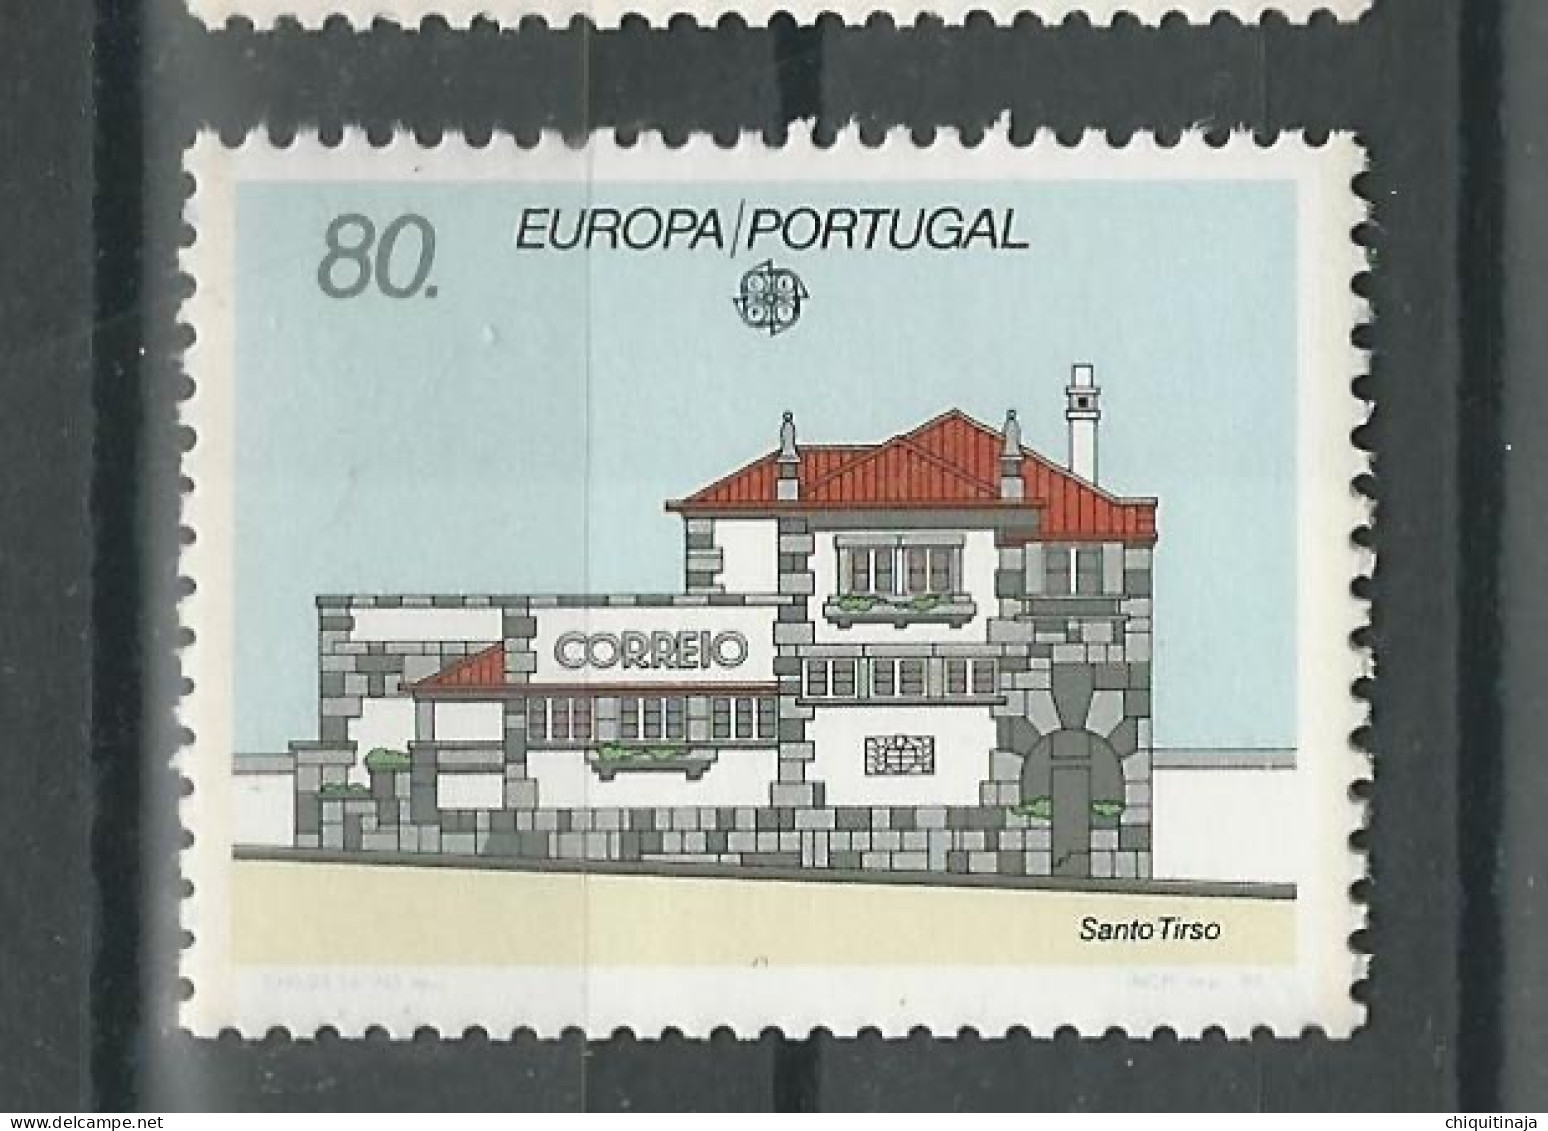 Portugal 1990 “Europa: Oficinas De Correos” MNH/** - Unused Stamps